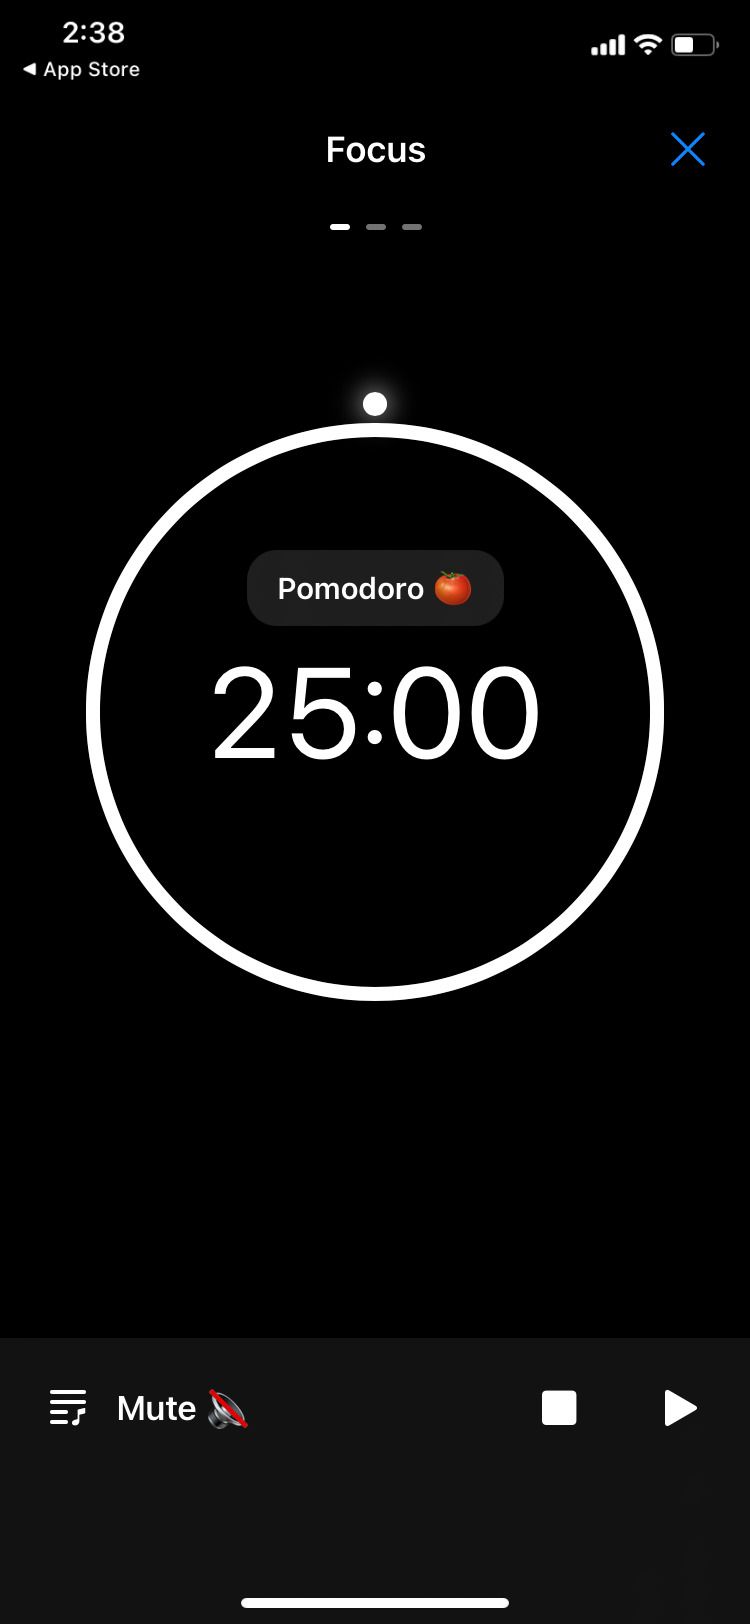 Pomodoro Focus Timer app Focus screen